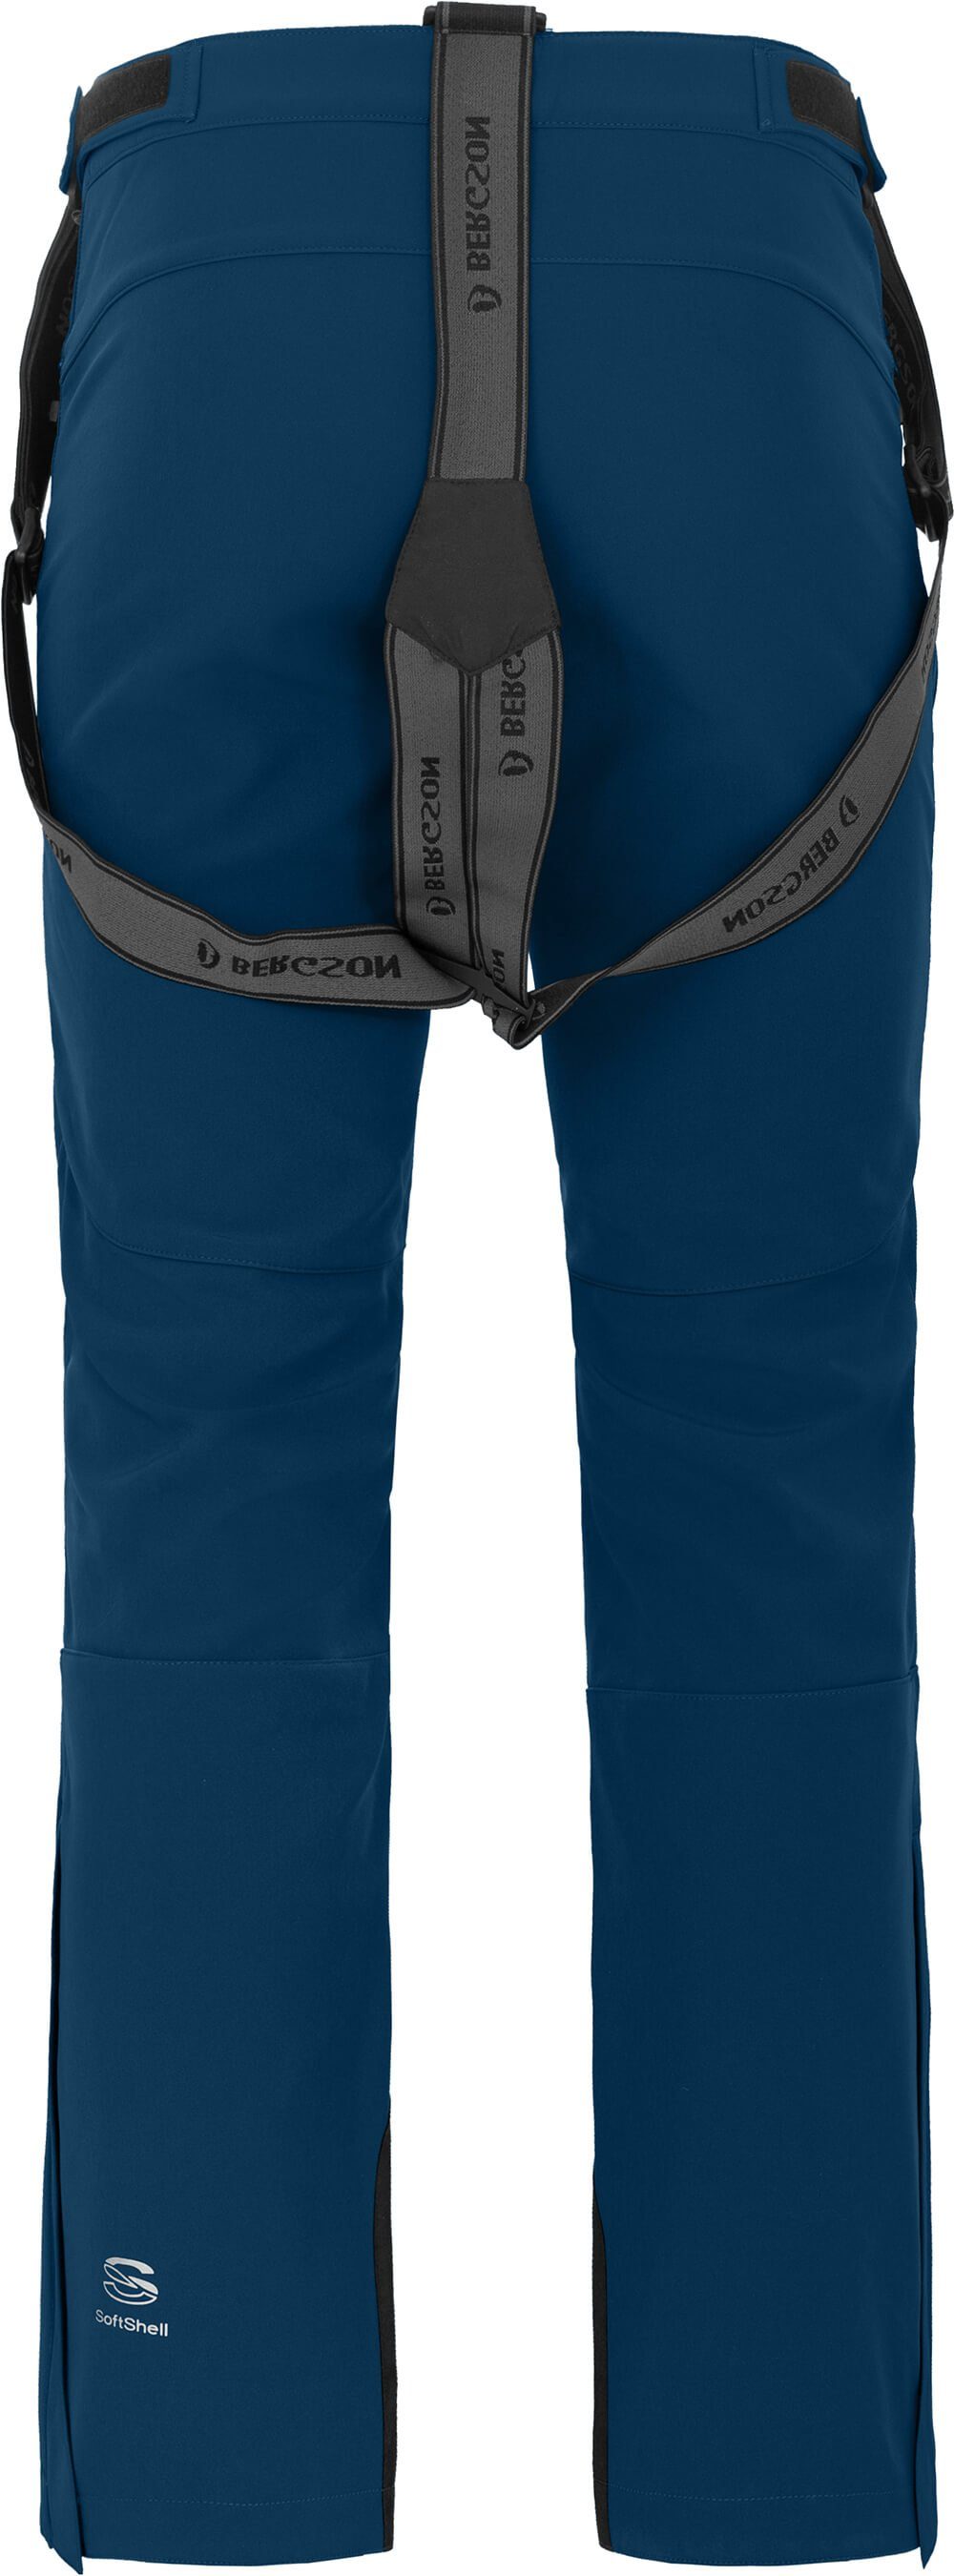 Skihose elastisch, Skihose, Herren Bergson Softshell JUMPER poseidon Normalgrößen, winddicht, blau